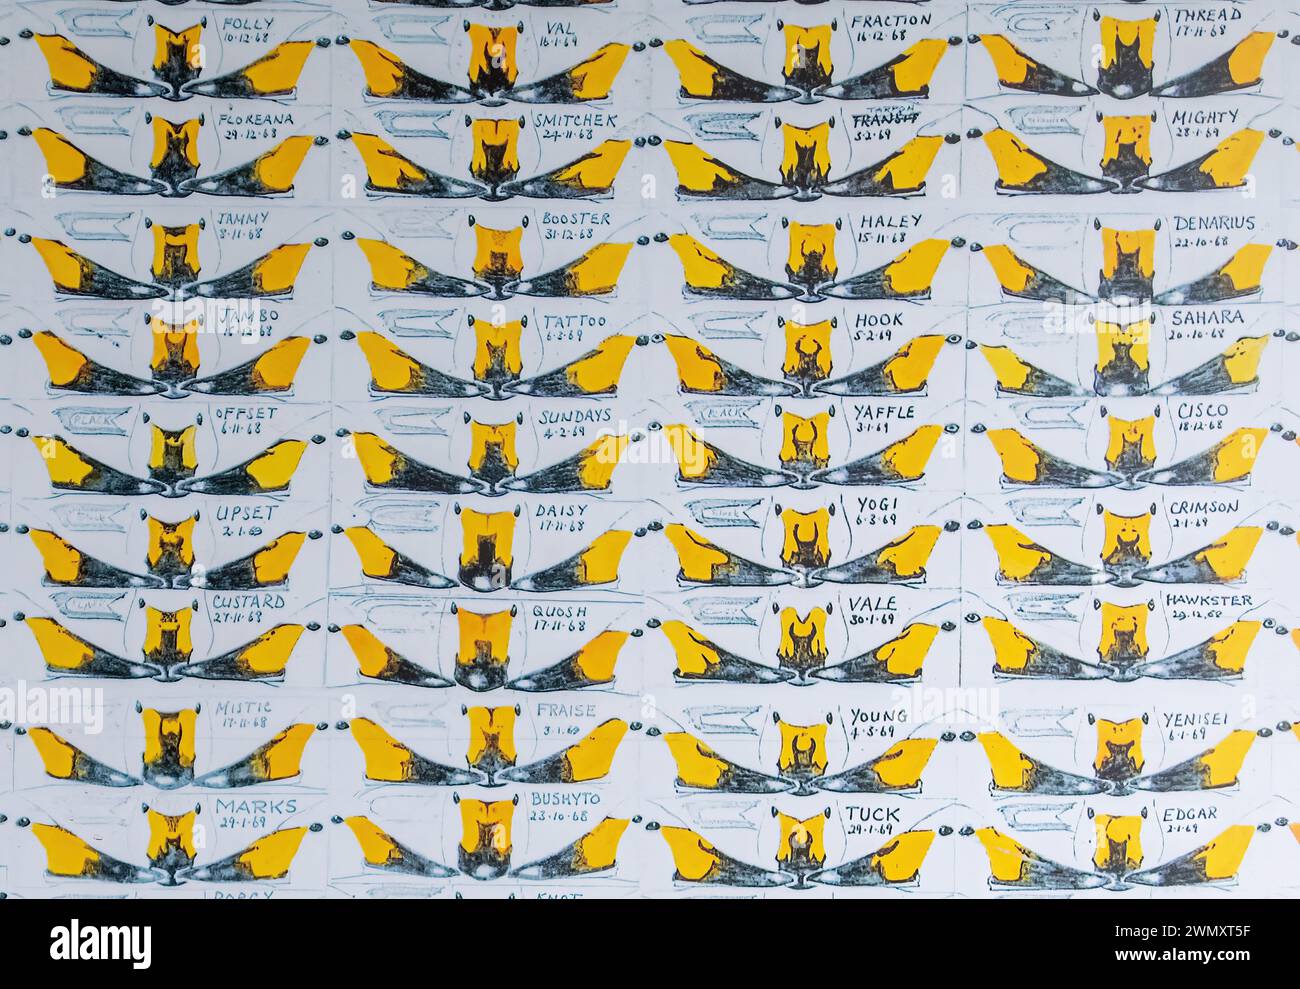 Identifizierung einzelner Bewick-Schwäne anhand von Schnabelbildern und Vergleich von Schwalbenmustern, WWT Slimbridge, Gloucestershire, UK Stockfoto